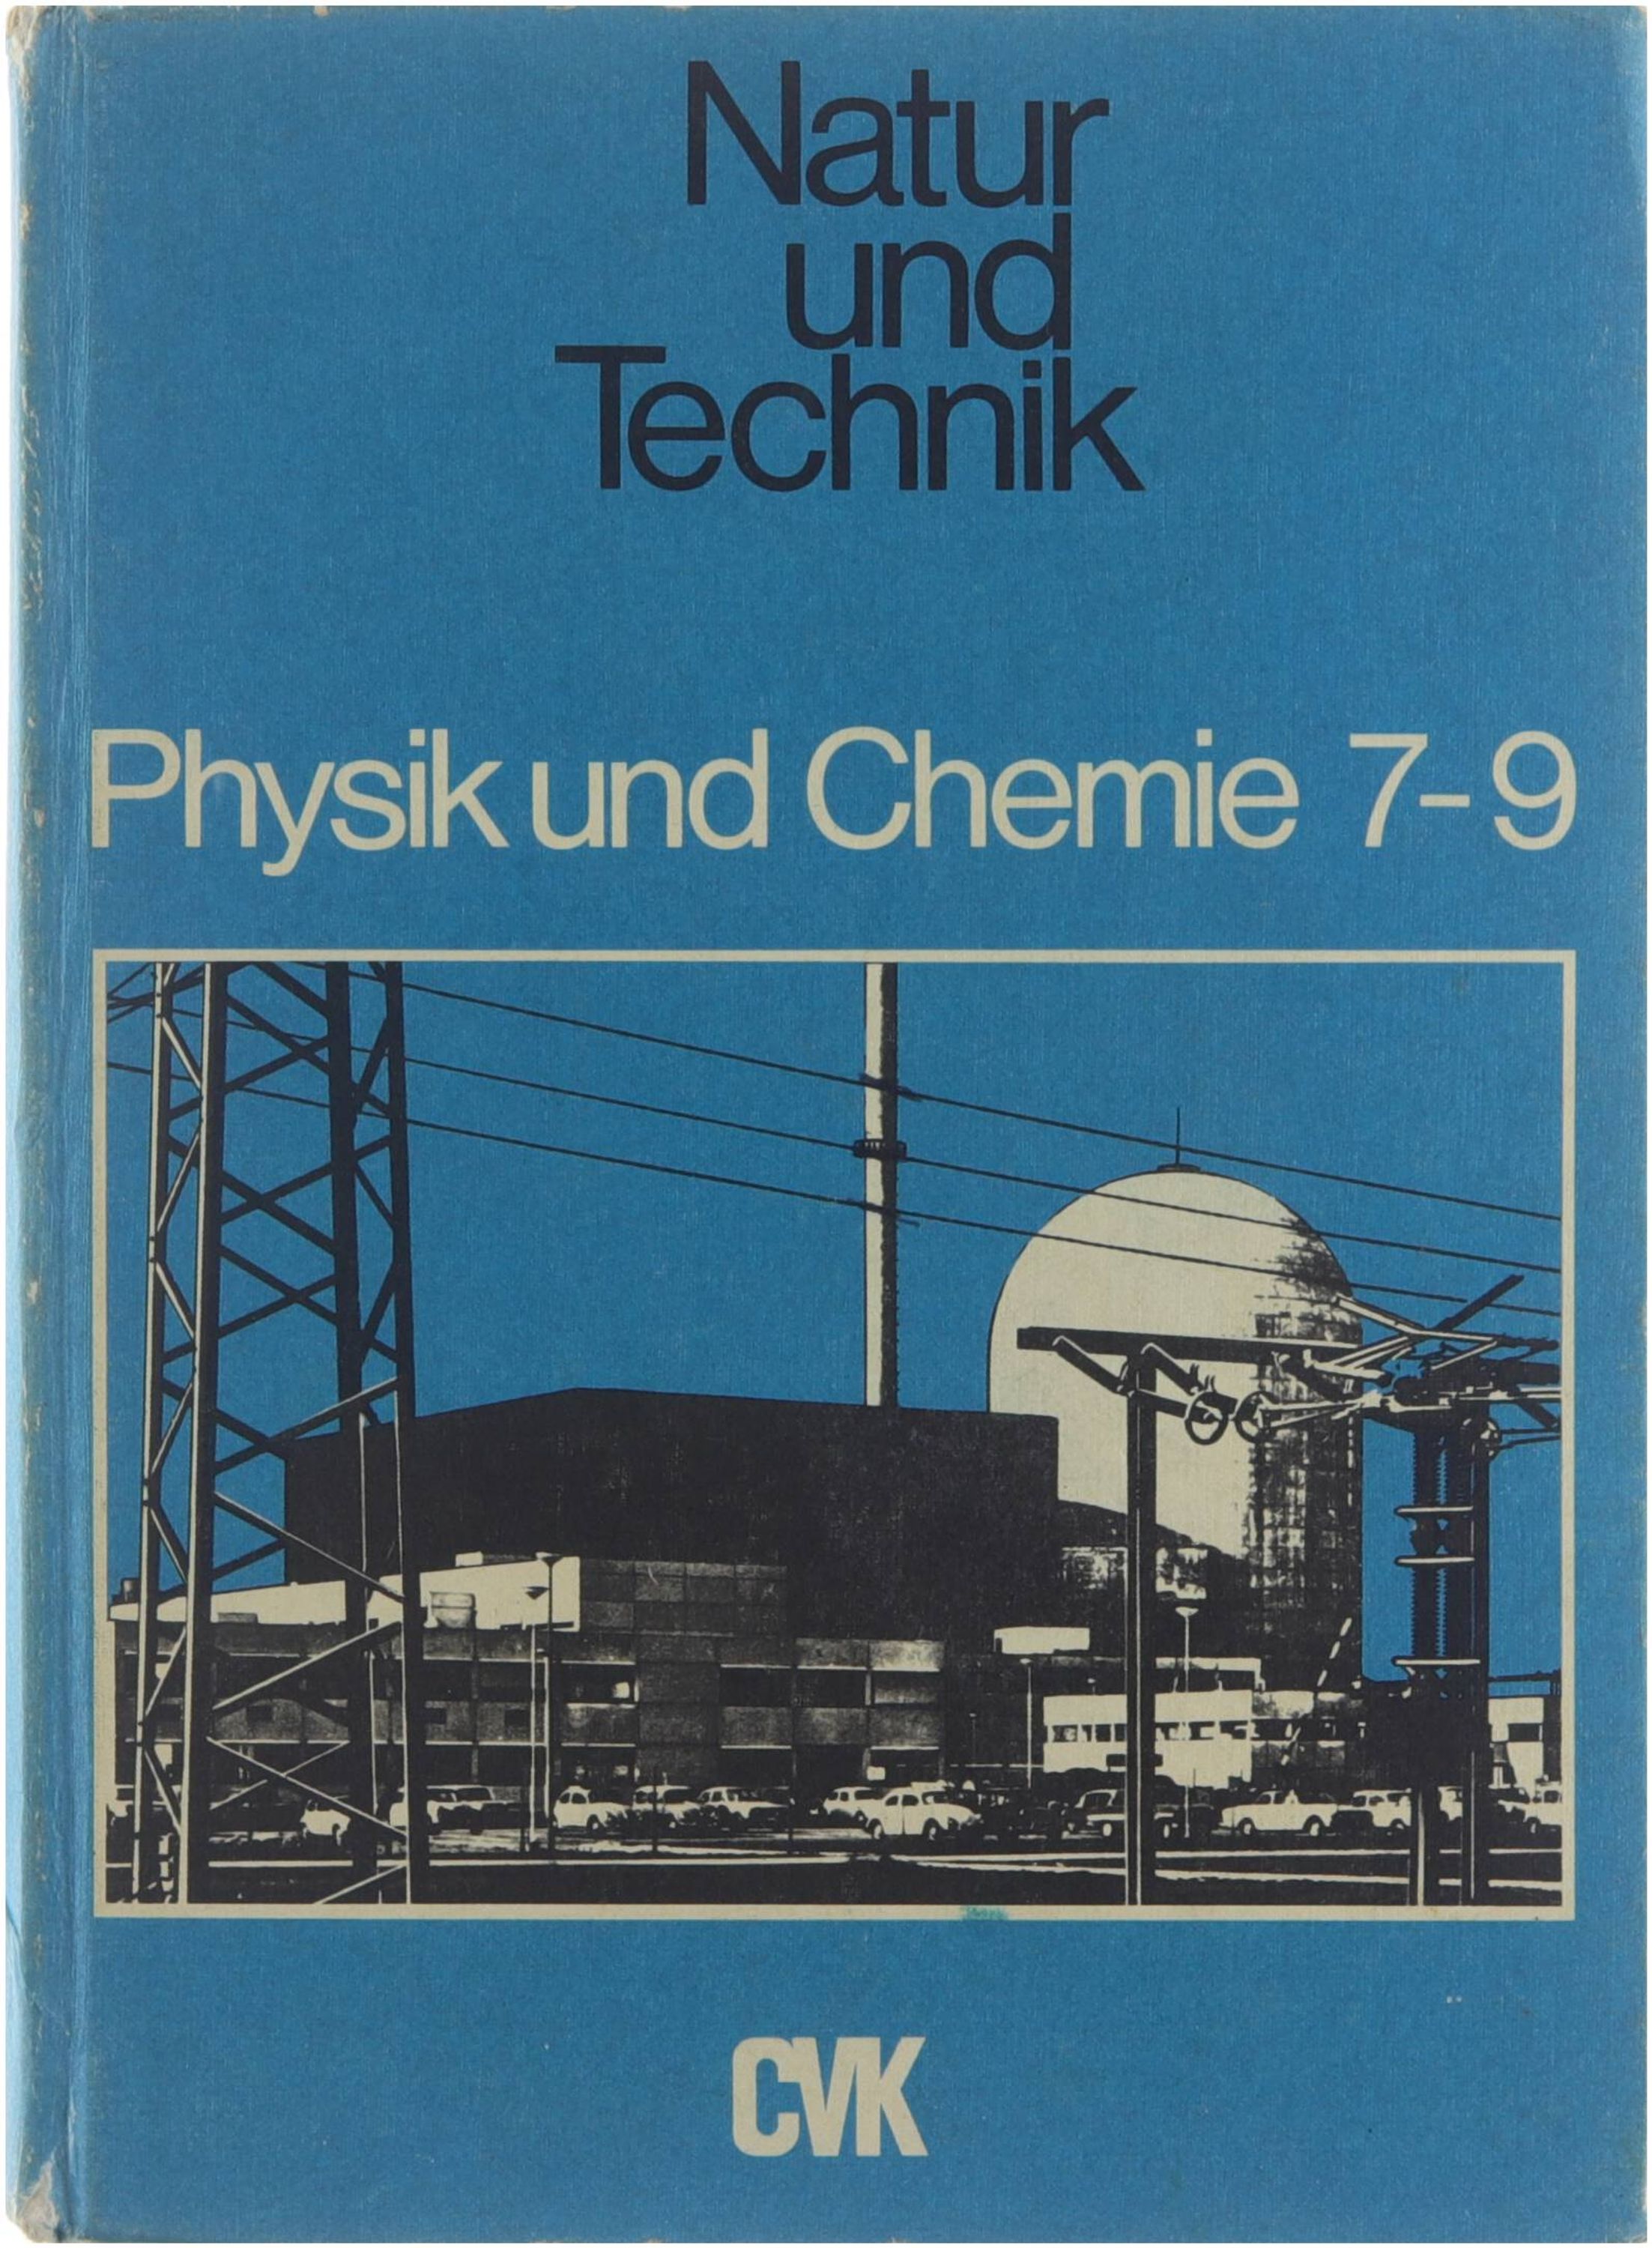 Natur und Technik / Physik und Chemie / B. 7-9. - Schro?der Wilhelm Stiegler Leonhard